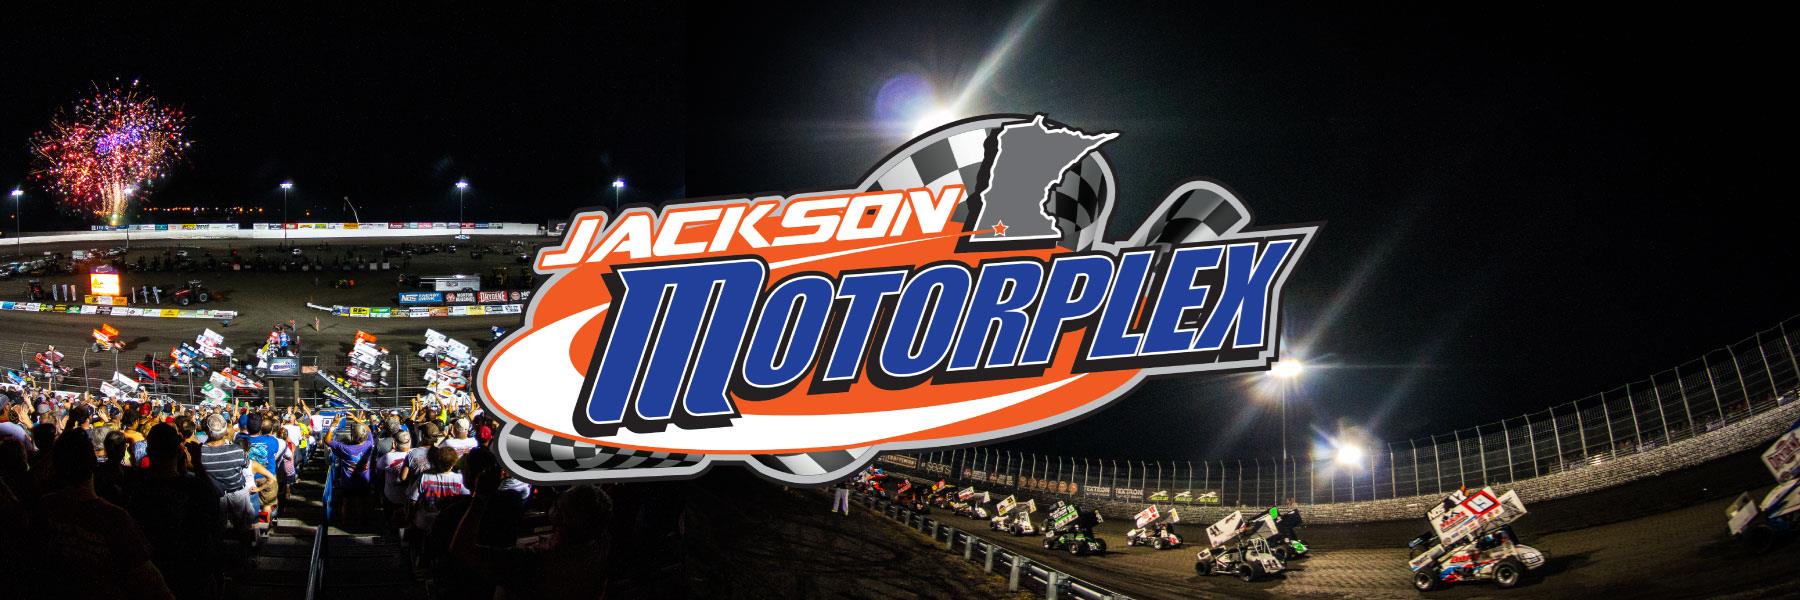 8/17/2013 - Jackson Motorplex